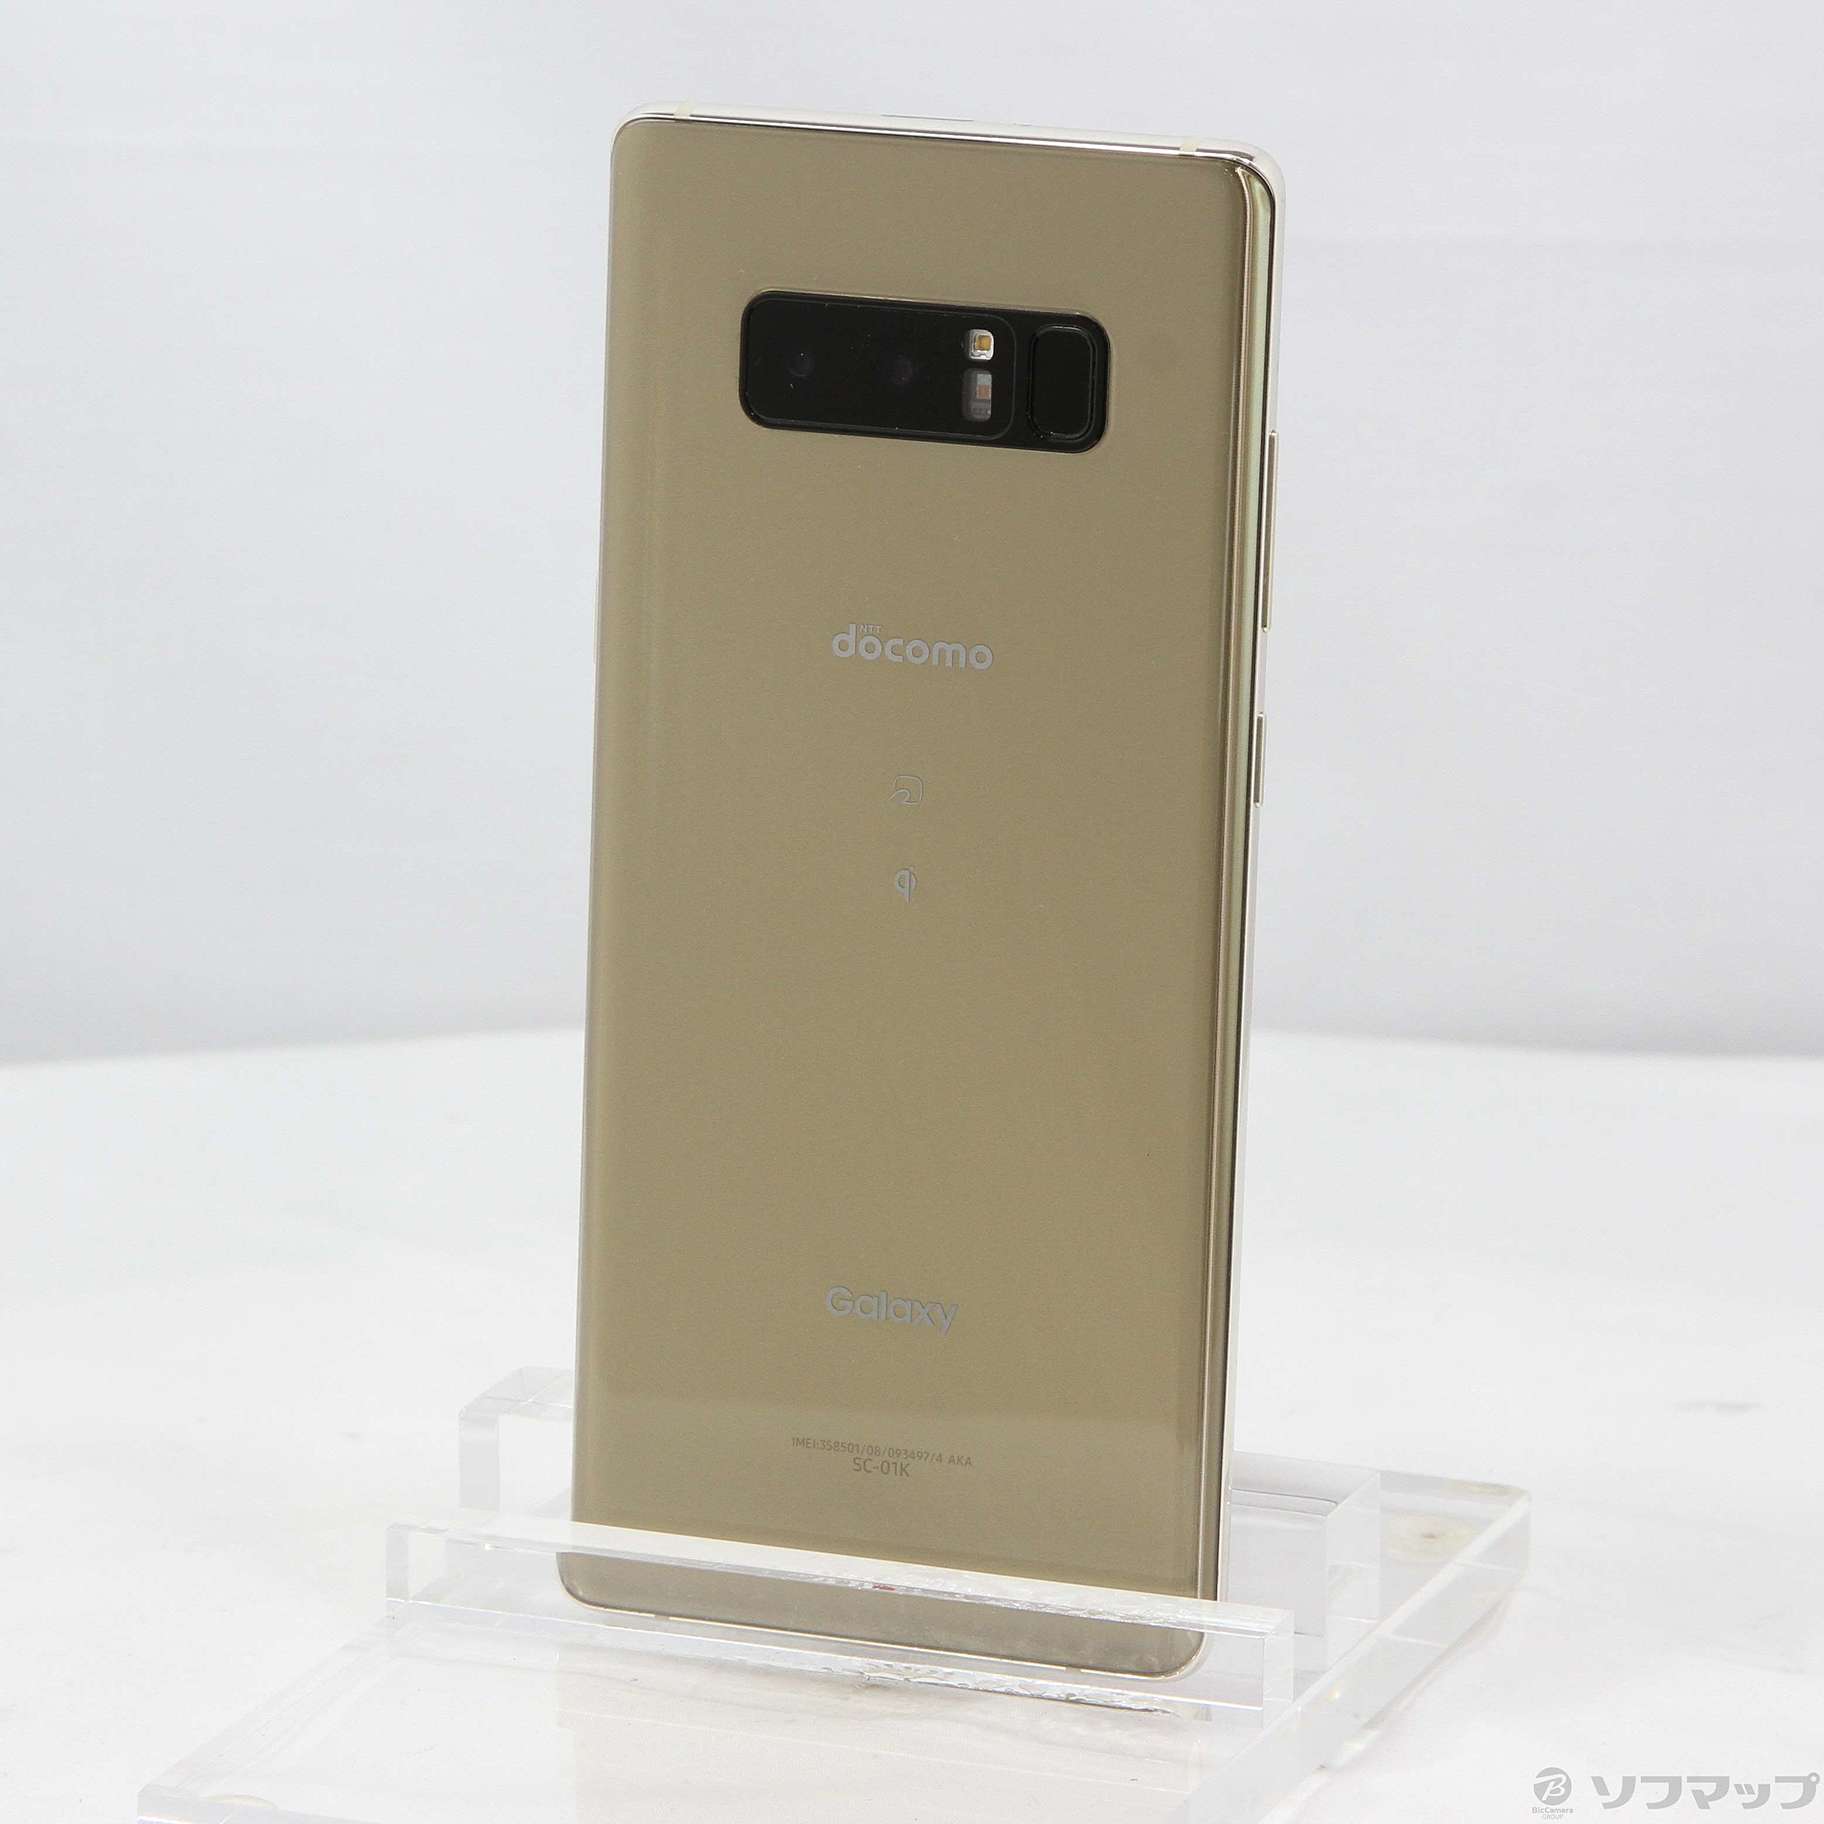 【SAMSUNG】Galaxy Note 8 /Gold【SIMフリー】